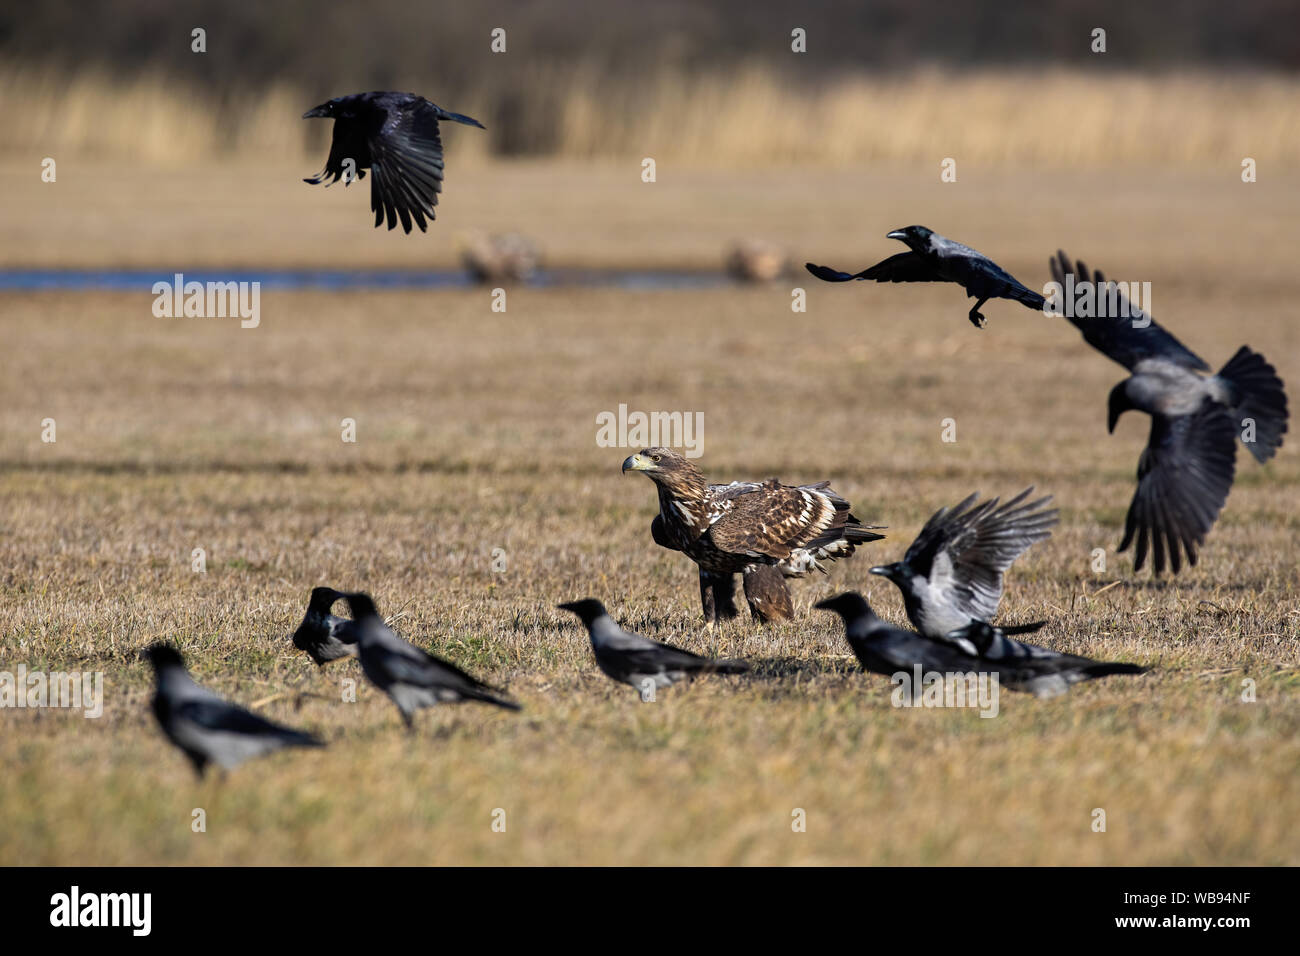 Rebaño de cuervos volando alrededor de águila de cola blanca sentado en el suelo en invierno Foto de stock